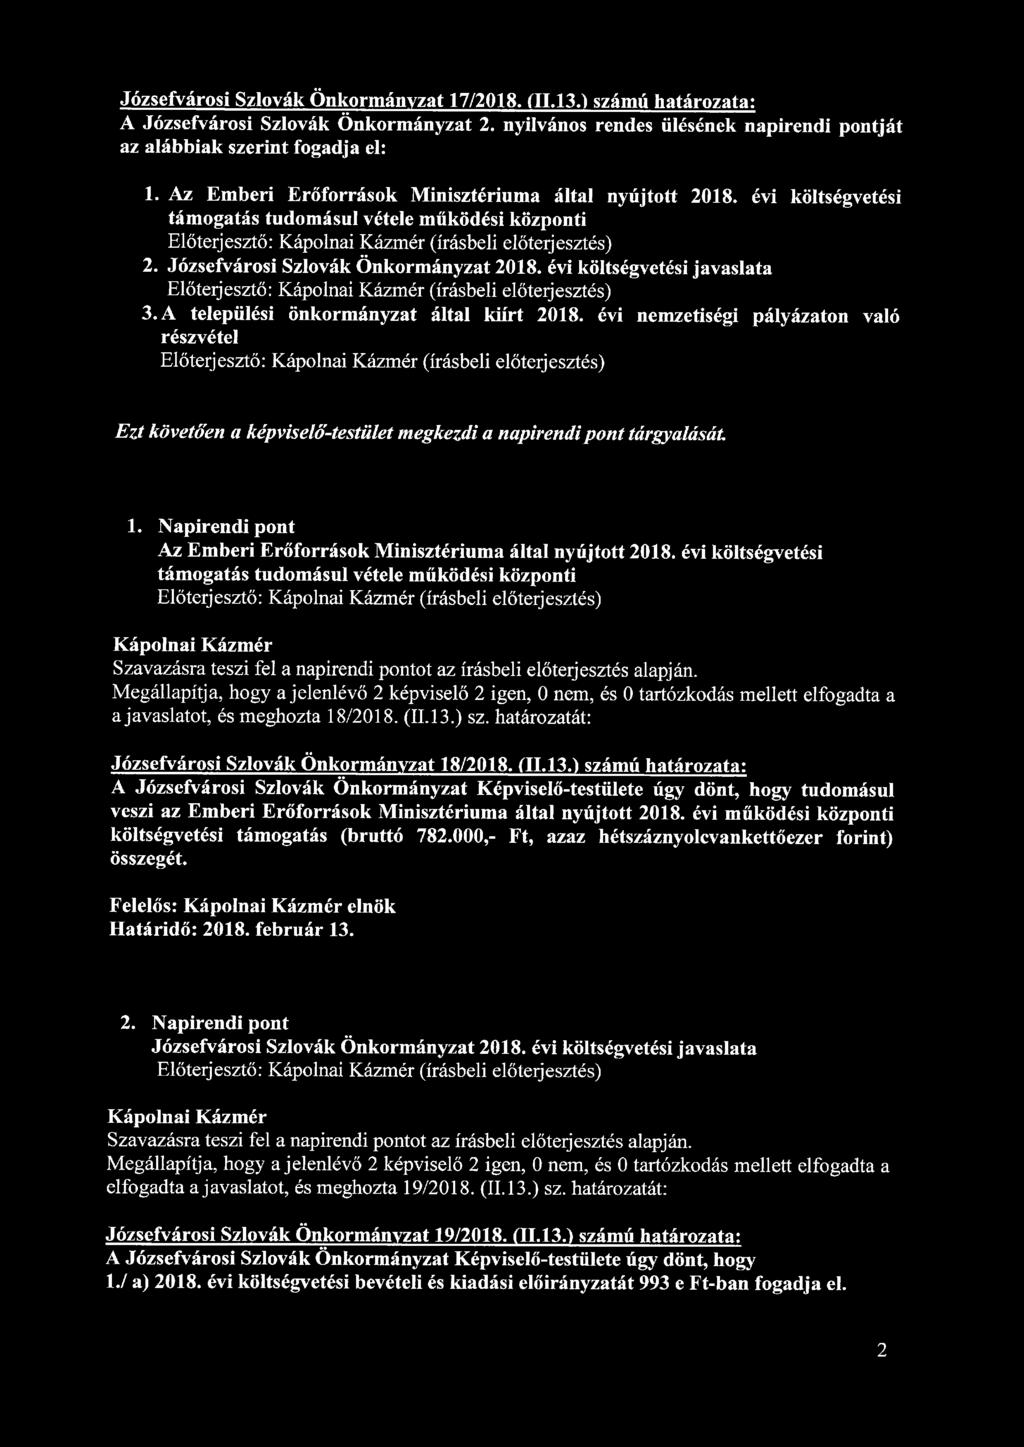 Józsefvárosi Szlovák Önkormányzat 17/2018. <11.13.1 számú határozata: A Józsefvárosi Szlovák Önkormányzat 2. nyilvános rendes ülésének napirendi pontját az alábbiak szerint fogadja el: 1.